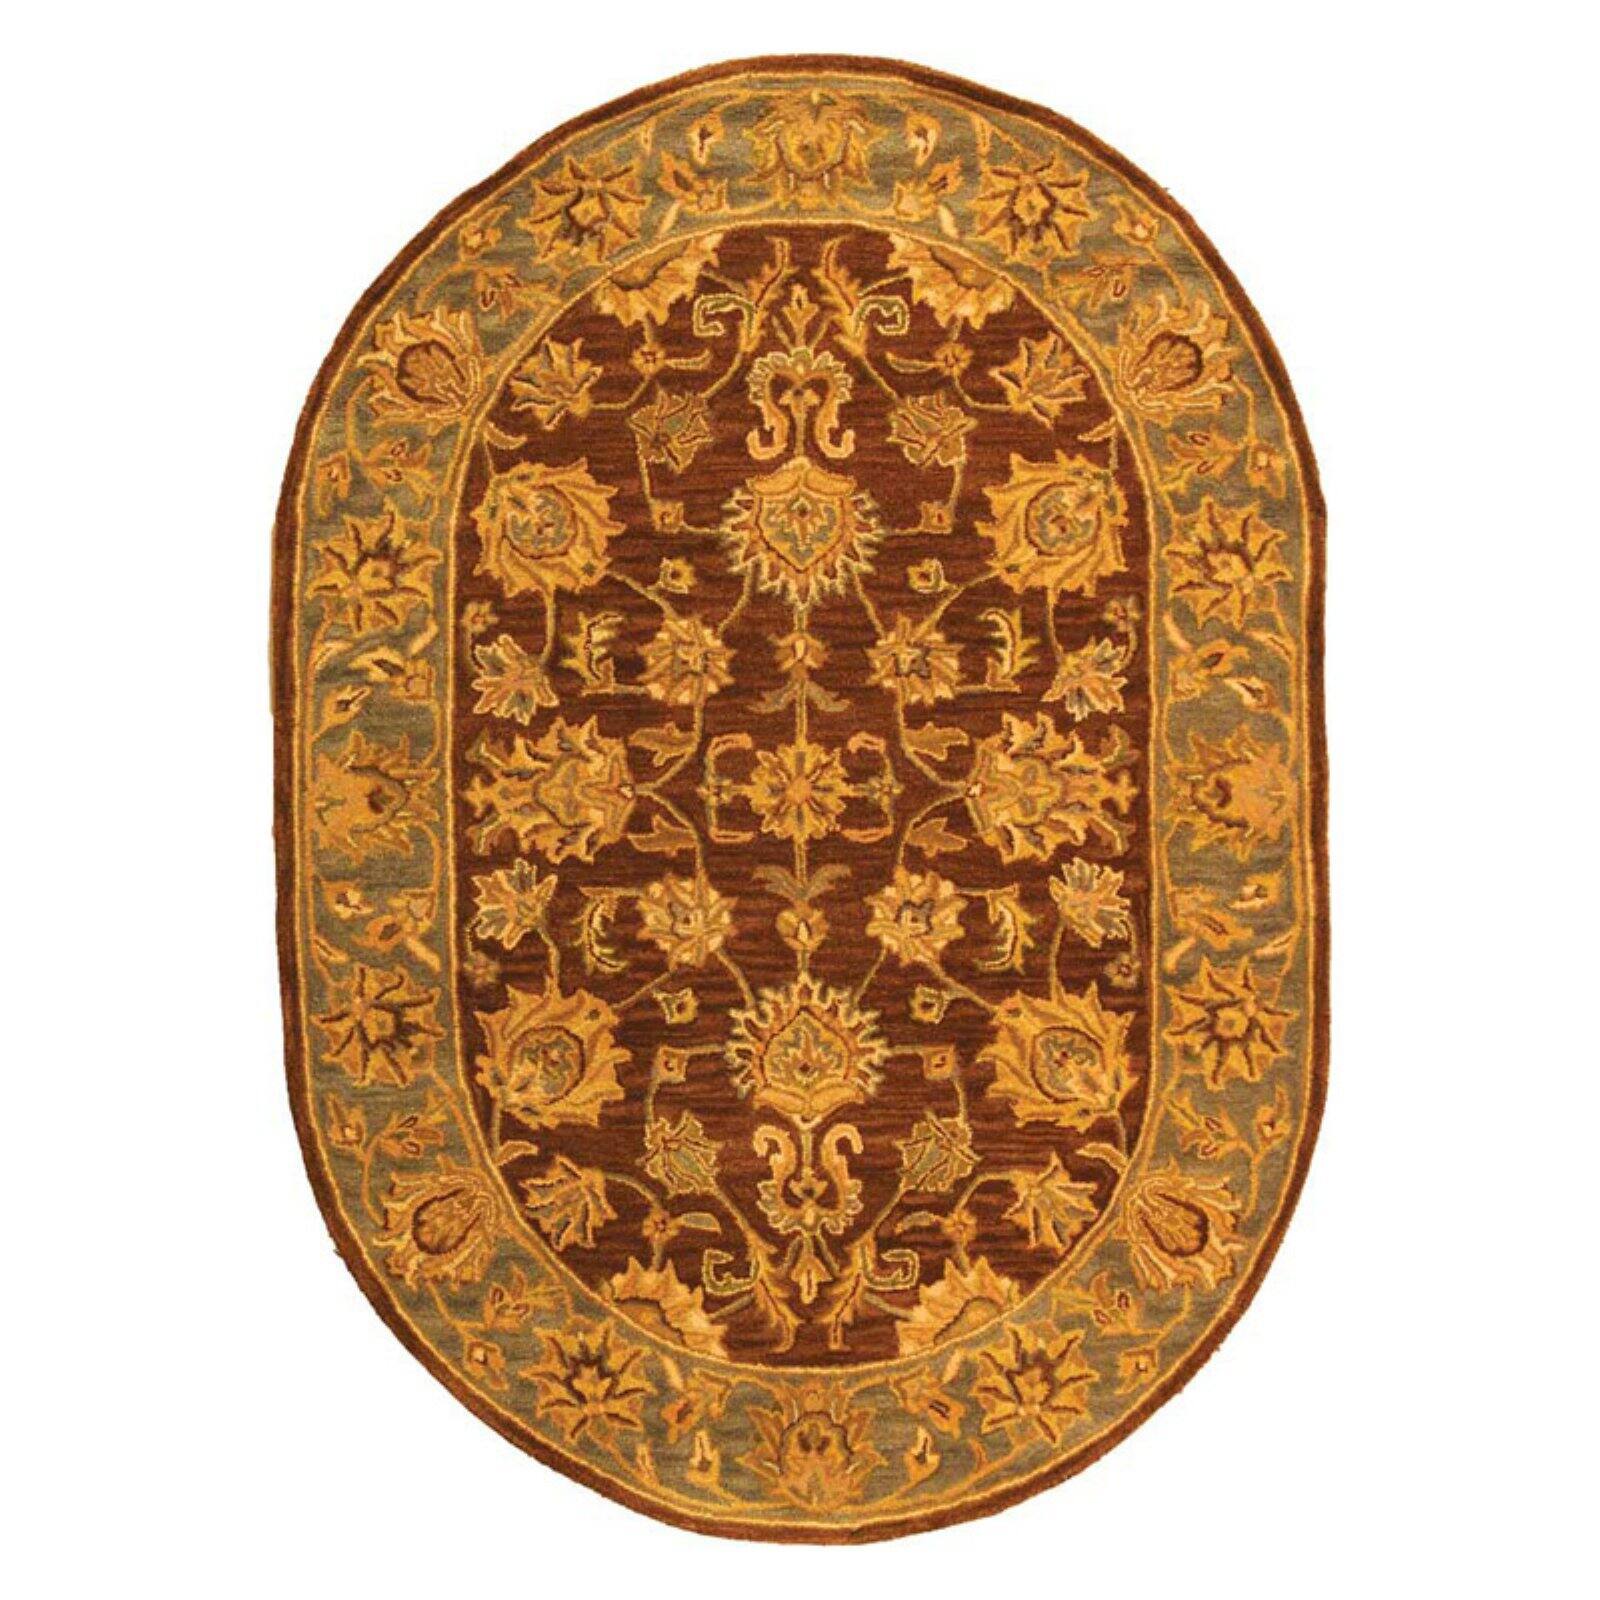 SAFAVIEH Heritage Regis Traditional Wool Area Rug, Brown/Blue, 7'6" x 9'6" - image 5 of 9